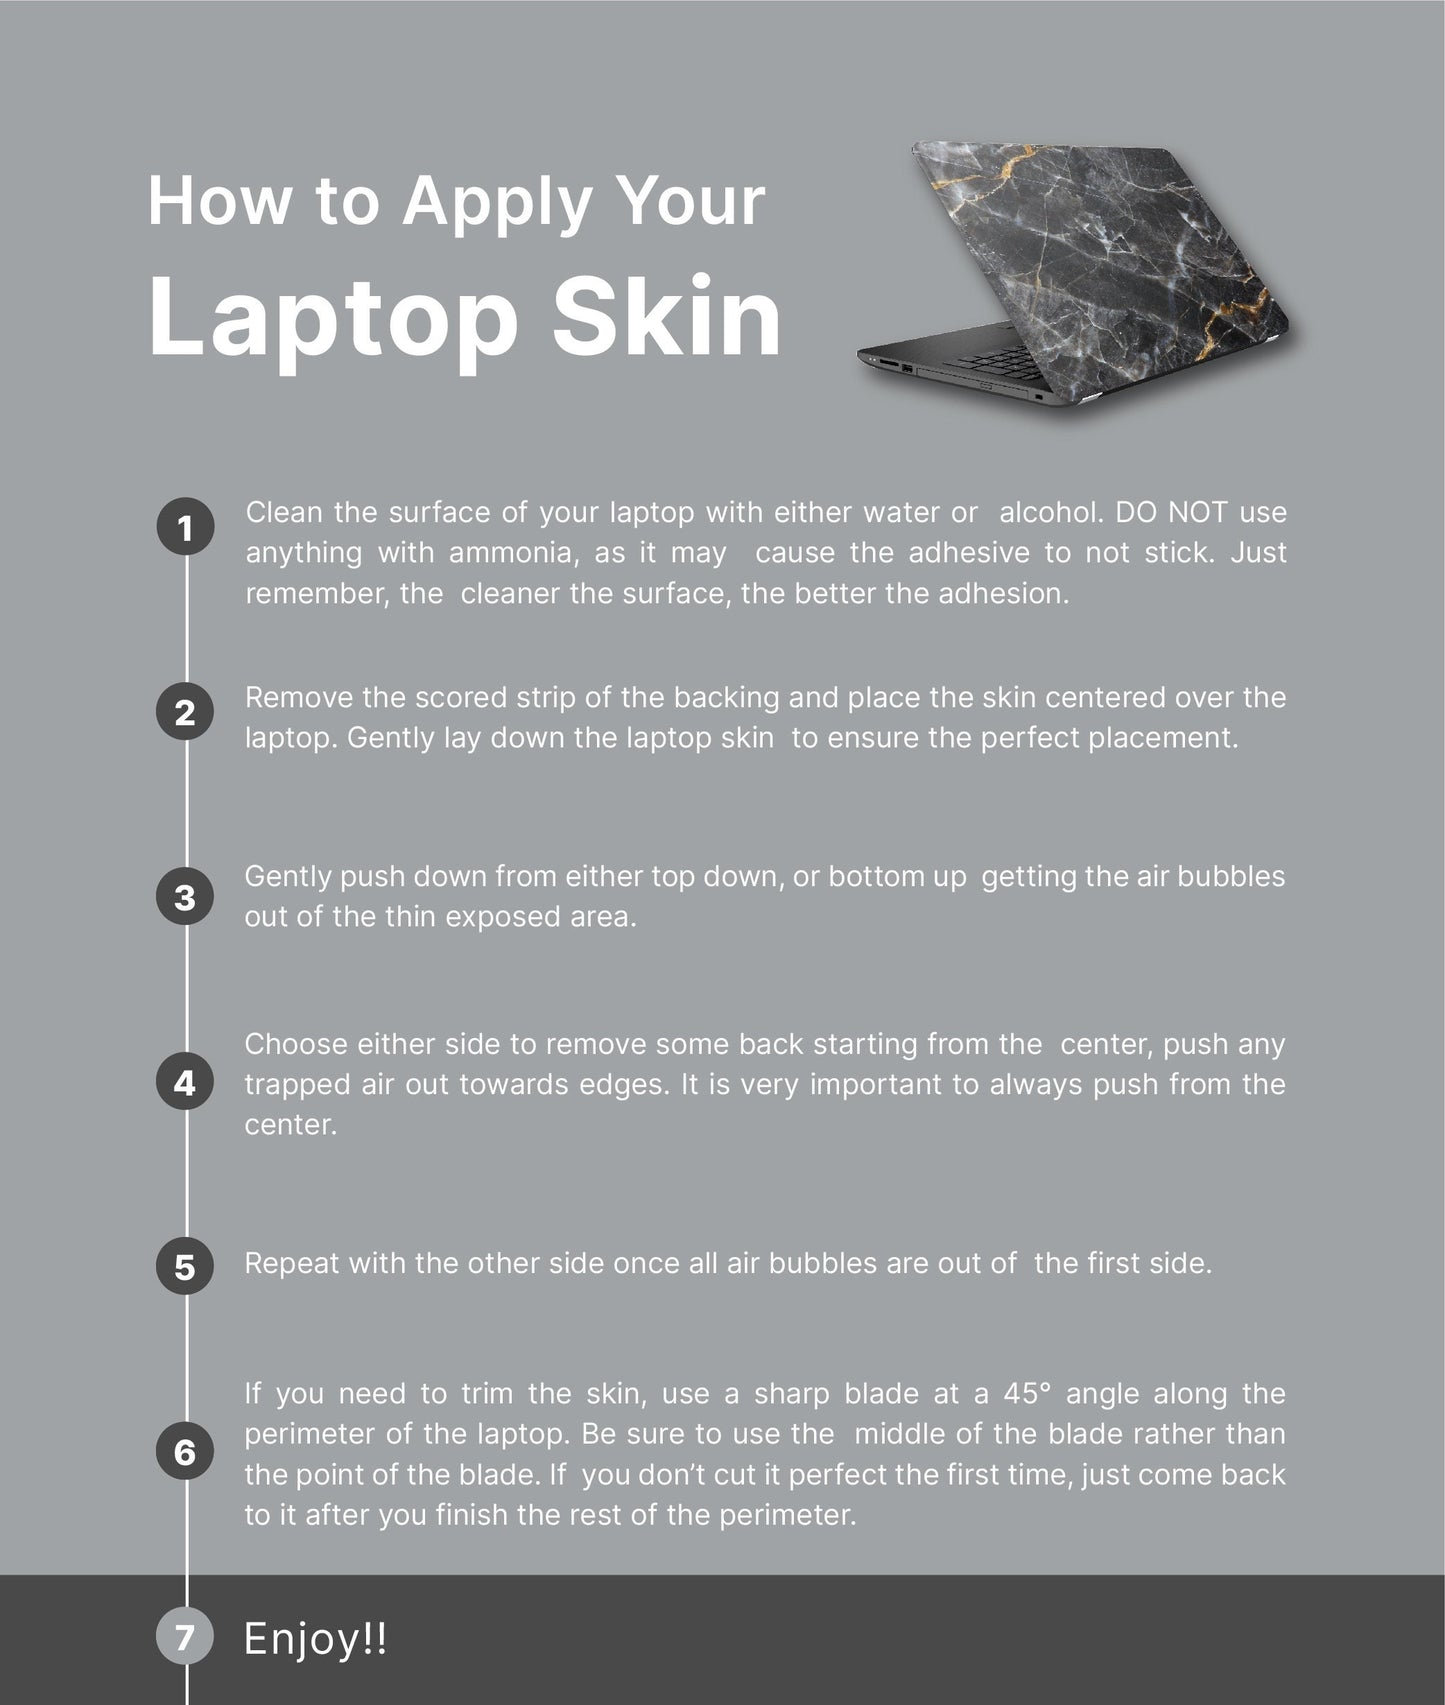 Monstera Leaf Laptop Skin, Laptop Cover, Laptop Skins, Removable Laptop Skins, Laptop Decal, Customized Laptop Skin, Laptop Stickers 248